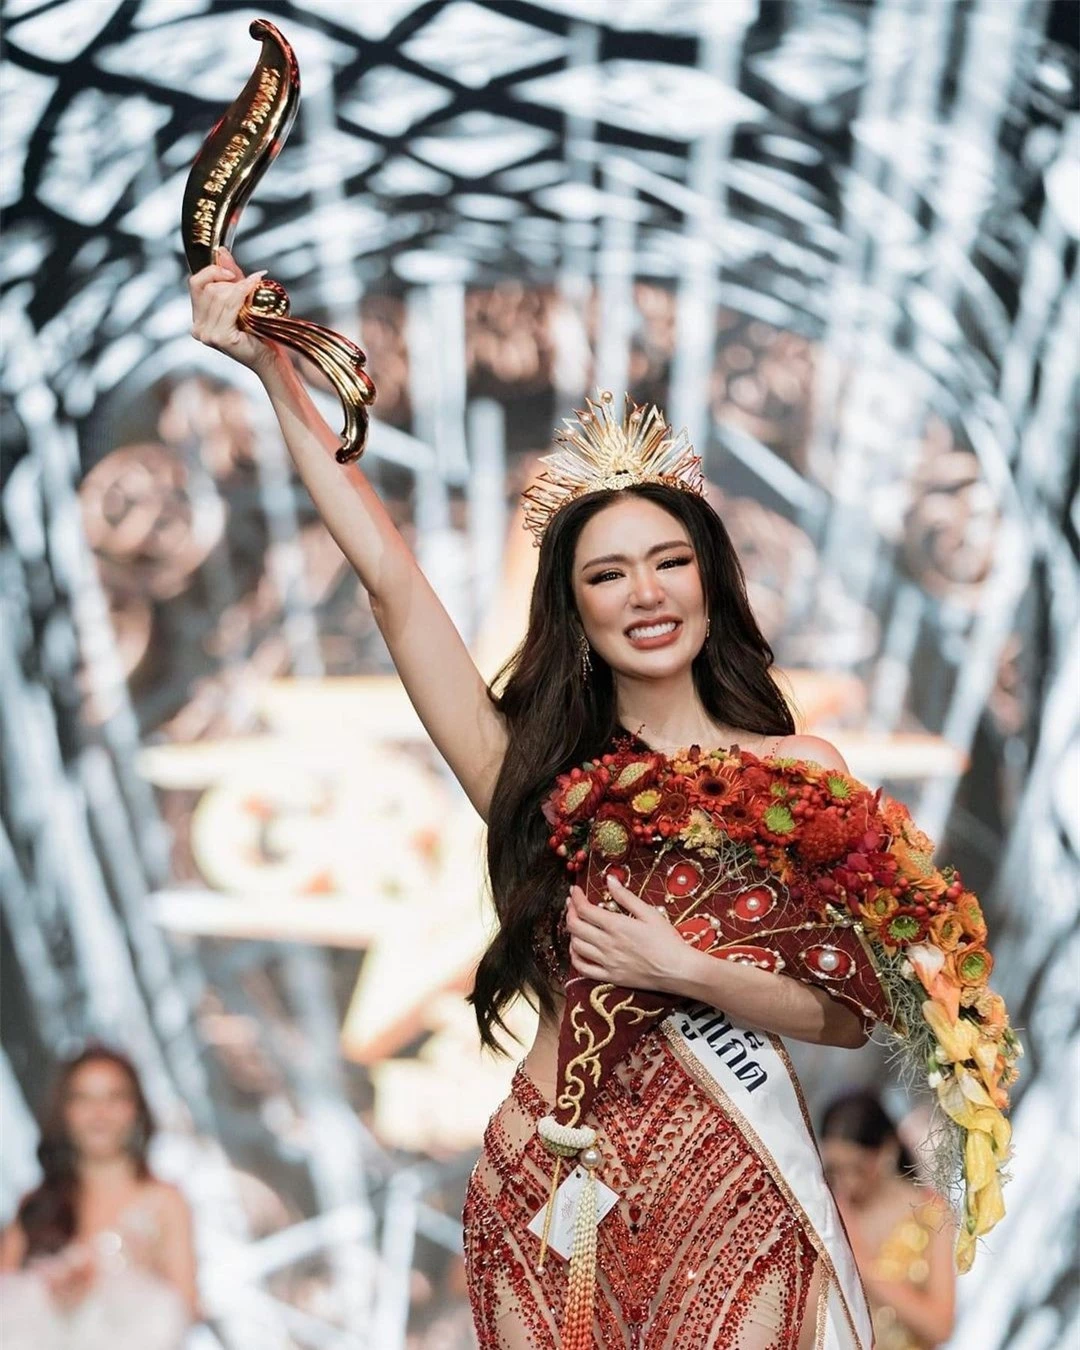 Nhan sắc nóng bỏng của người đẹp lai đăng quang Hoa hậu Hòa bình Phuket ảnh 1